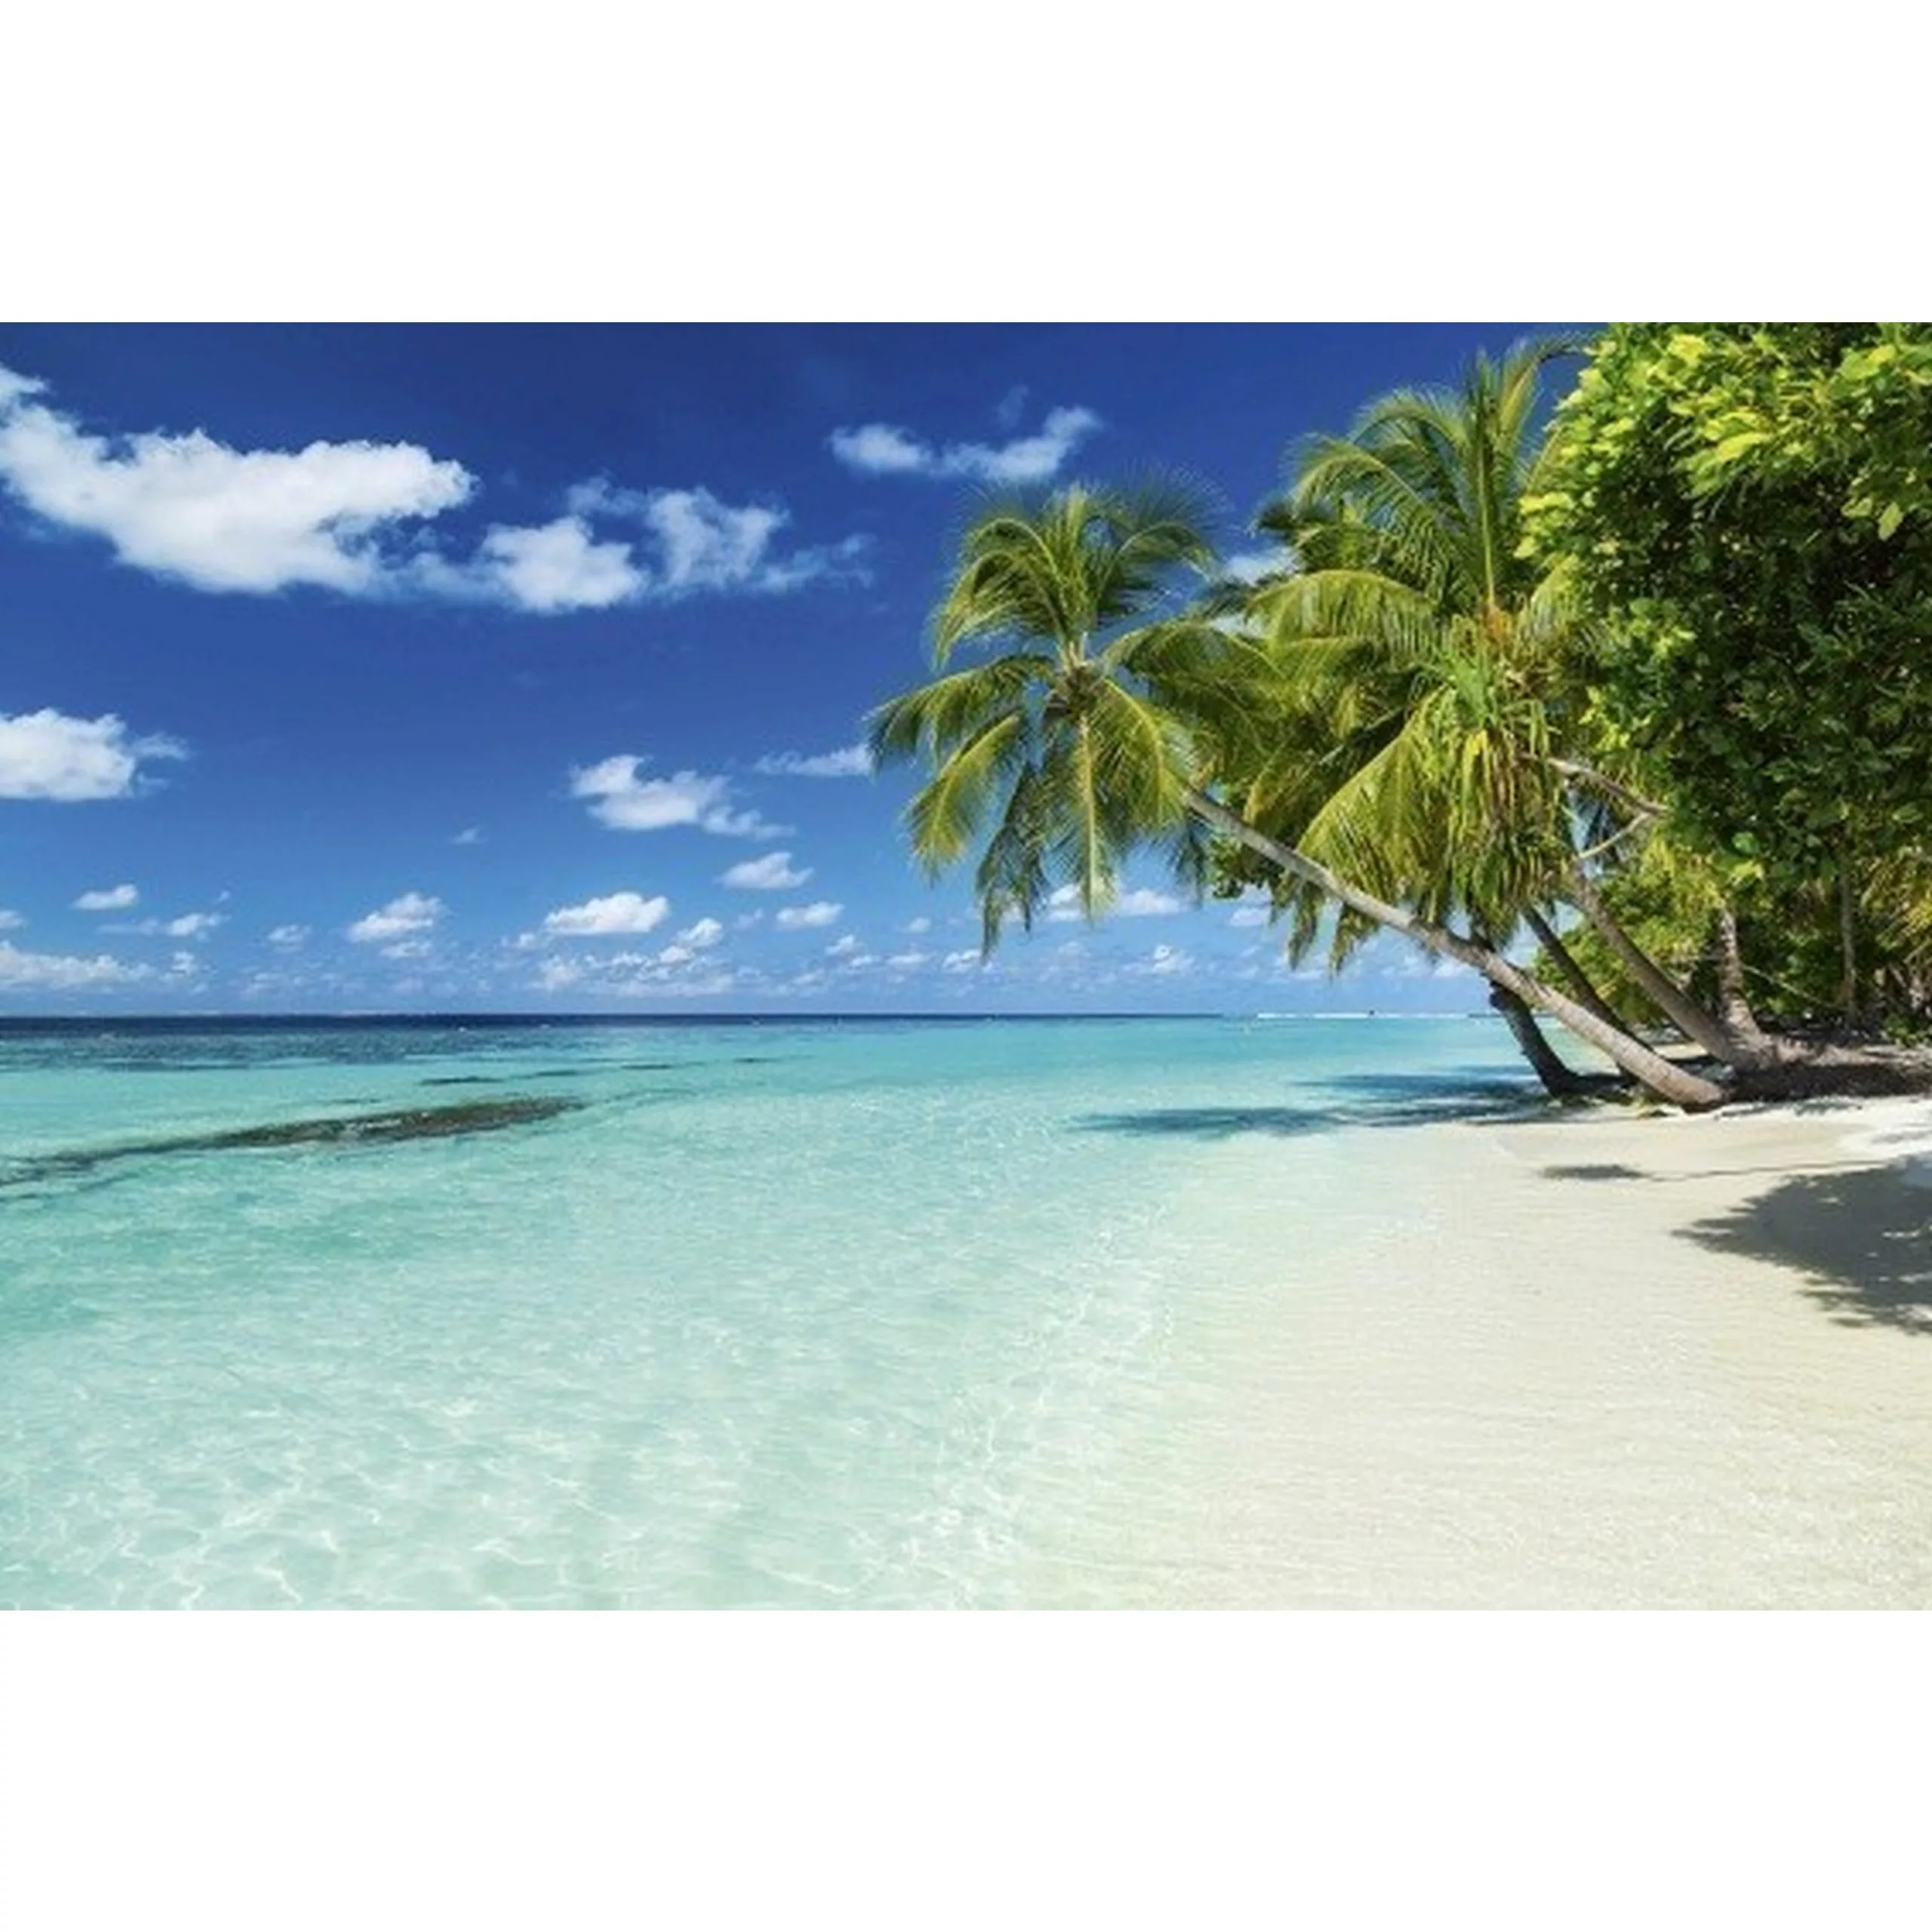 Fototapete PARADISE BEACH  | MS-5-0215 | Blau | Digitaldruck auf Vliesträge günstig online kaufen